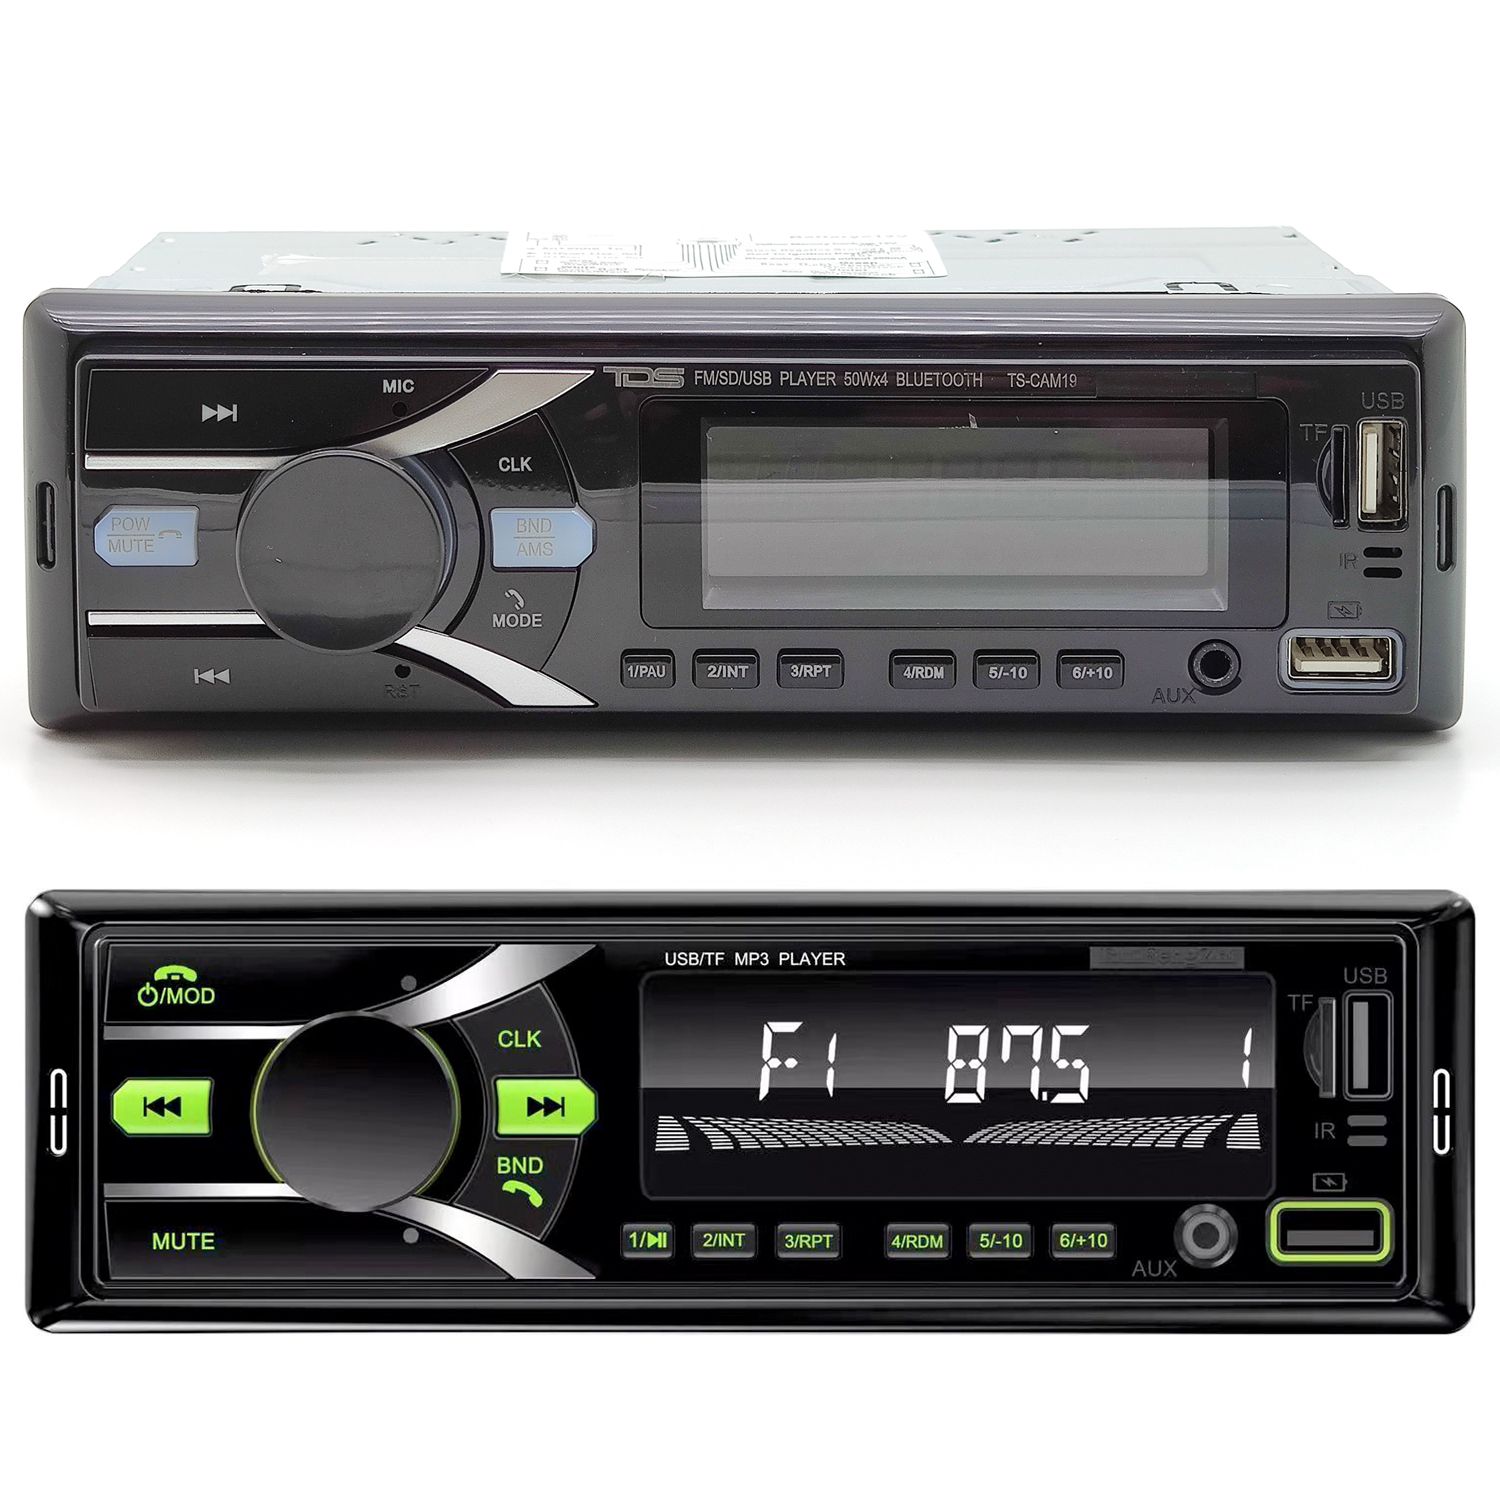 Съемная автомагнитола. TDS TS-cam19 автомагнитола (радио,USB,Bluetooth). Skylor блютуз 1din. TDS TS-cam06 автомагнитола 2din (радио,USB,Bluetooth). Магнитола с блютуз TDS.